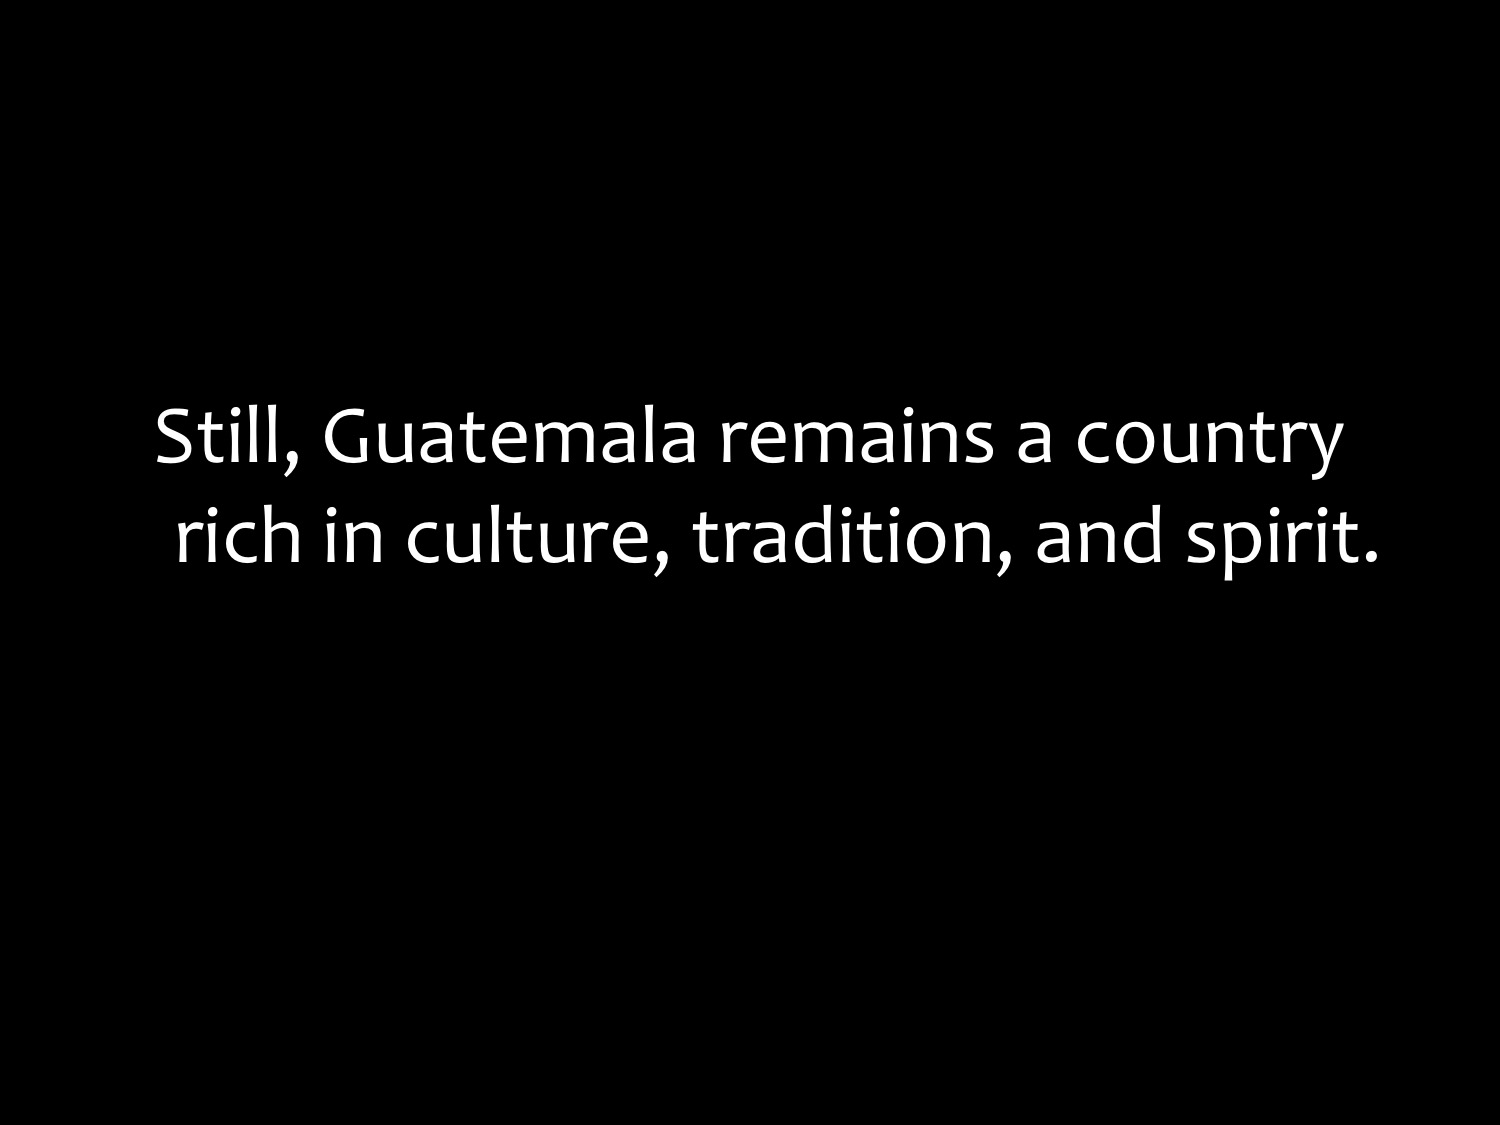 Media - About Guatemala